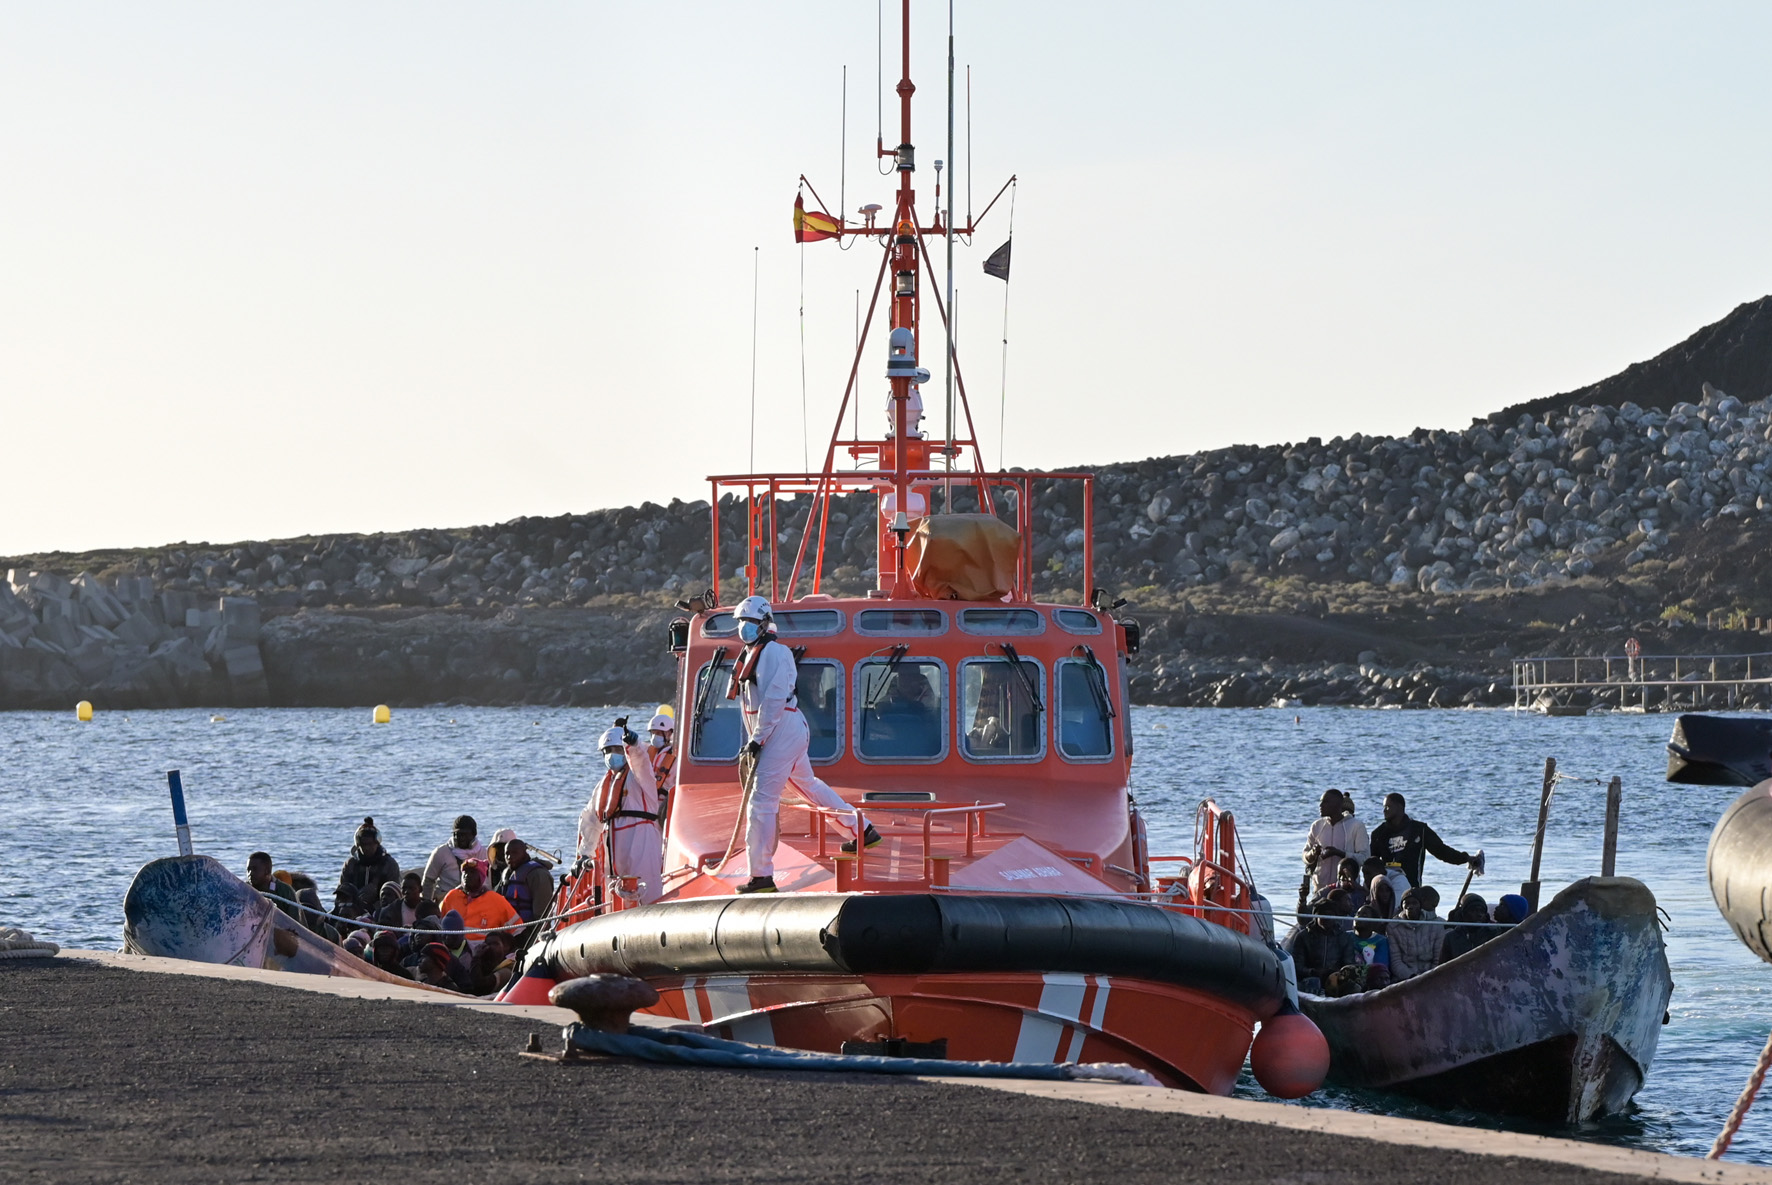 Salvamento Marítimo rescata dos Cayucos con 130 inmigrantes en la tarde de hoy en aguas cercanas a El Hierro